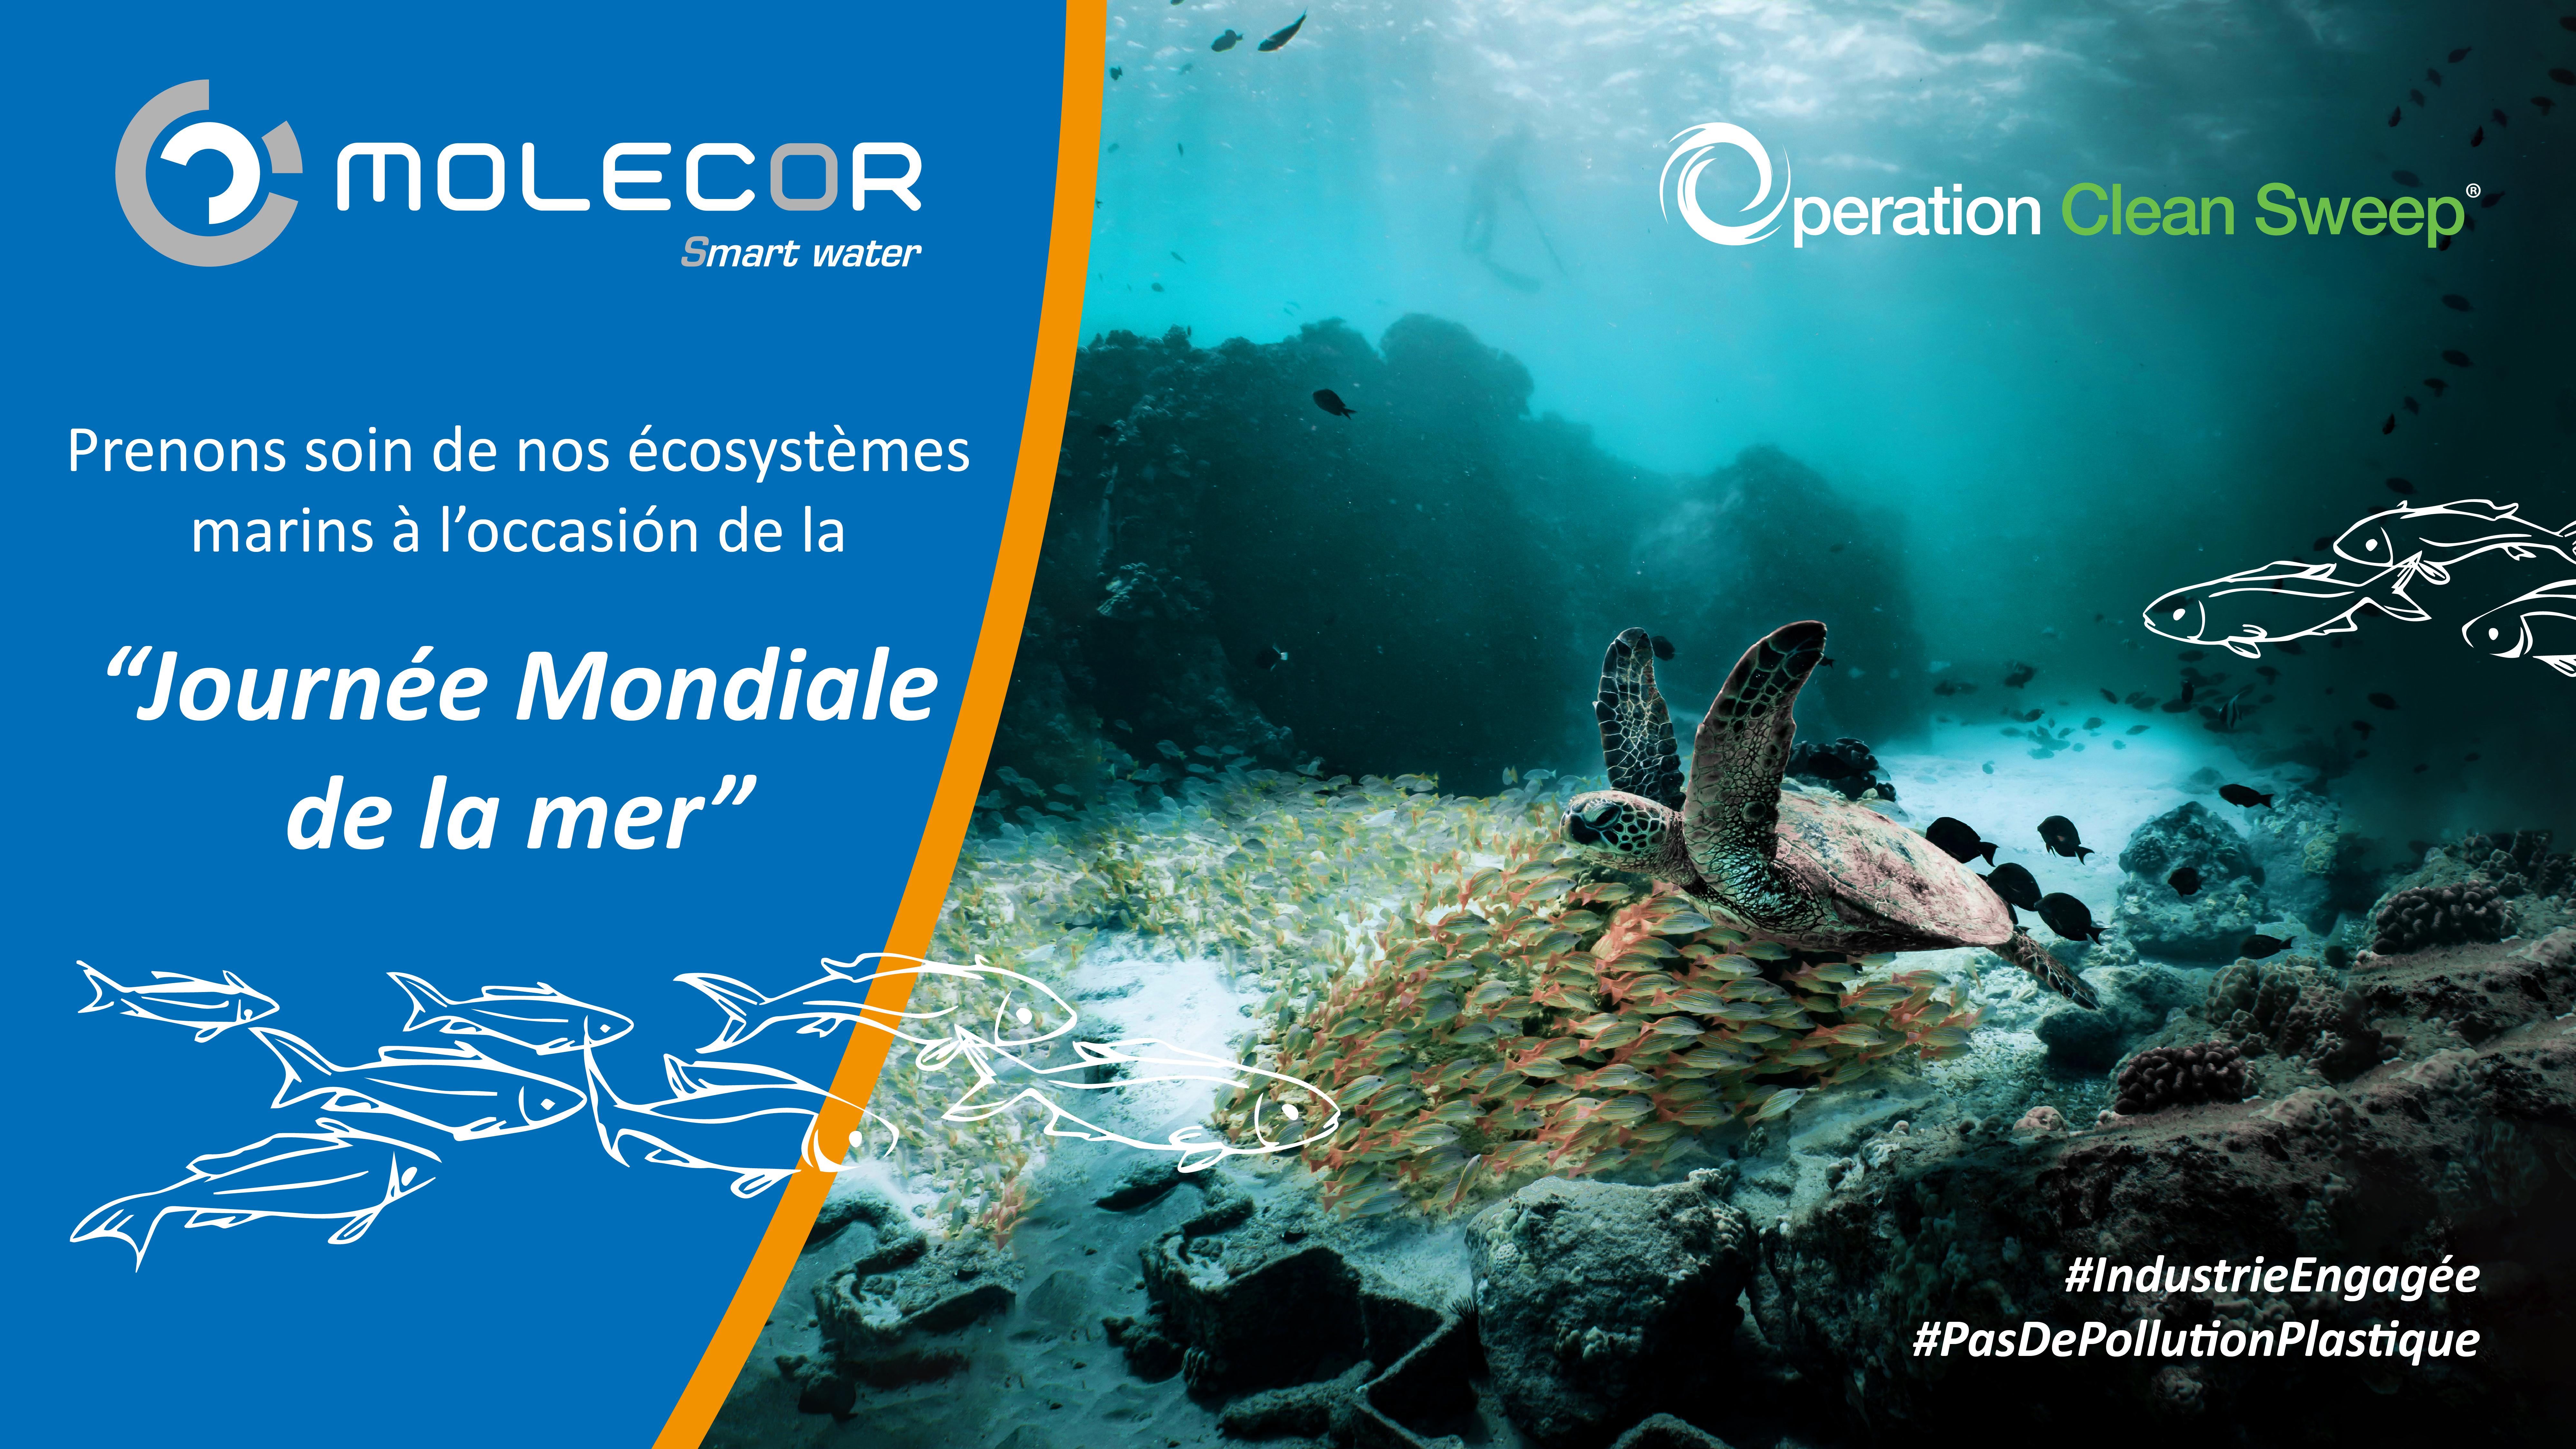 Molecor s'associe à la préservation des écosystèmes marins à l'occasion de la « Journée mondiale des océans » grâce au programme Operation Clean Sweep